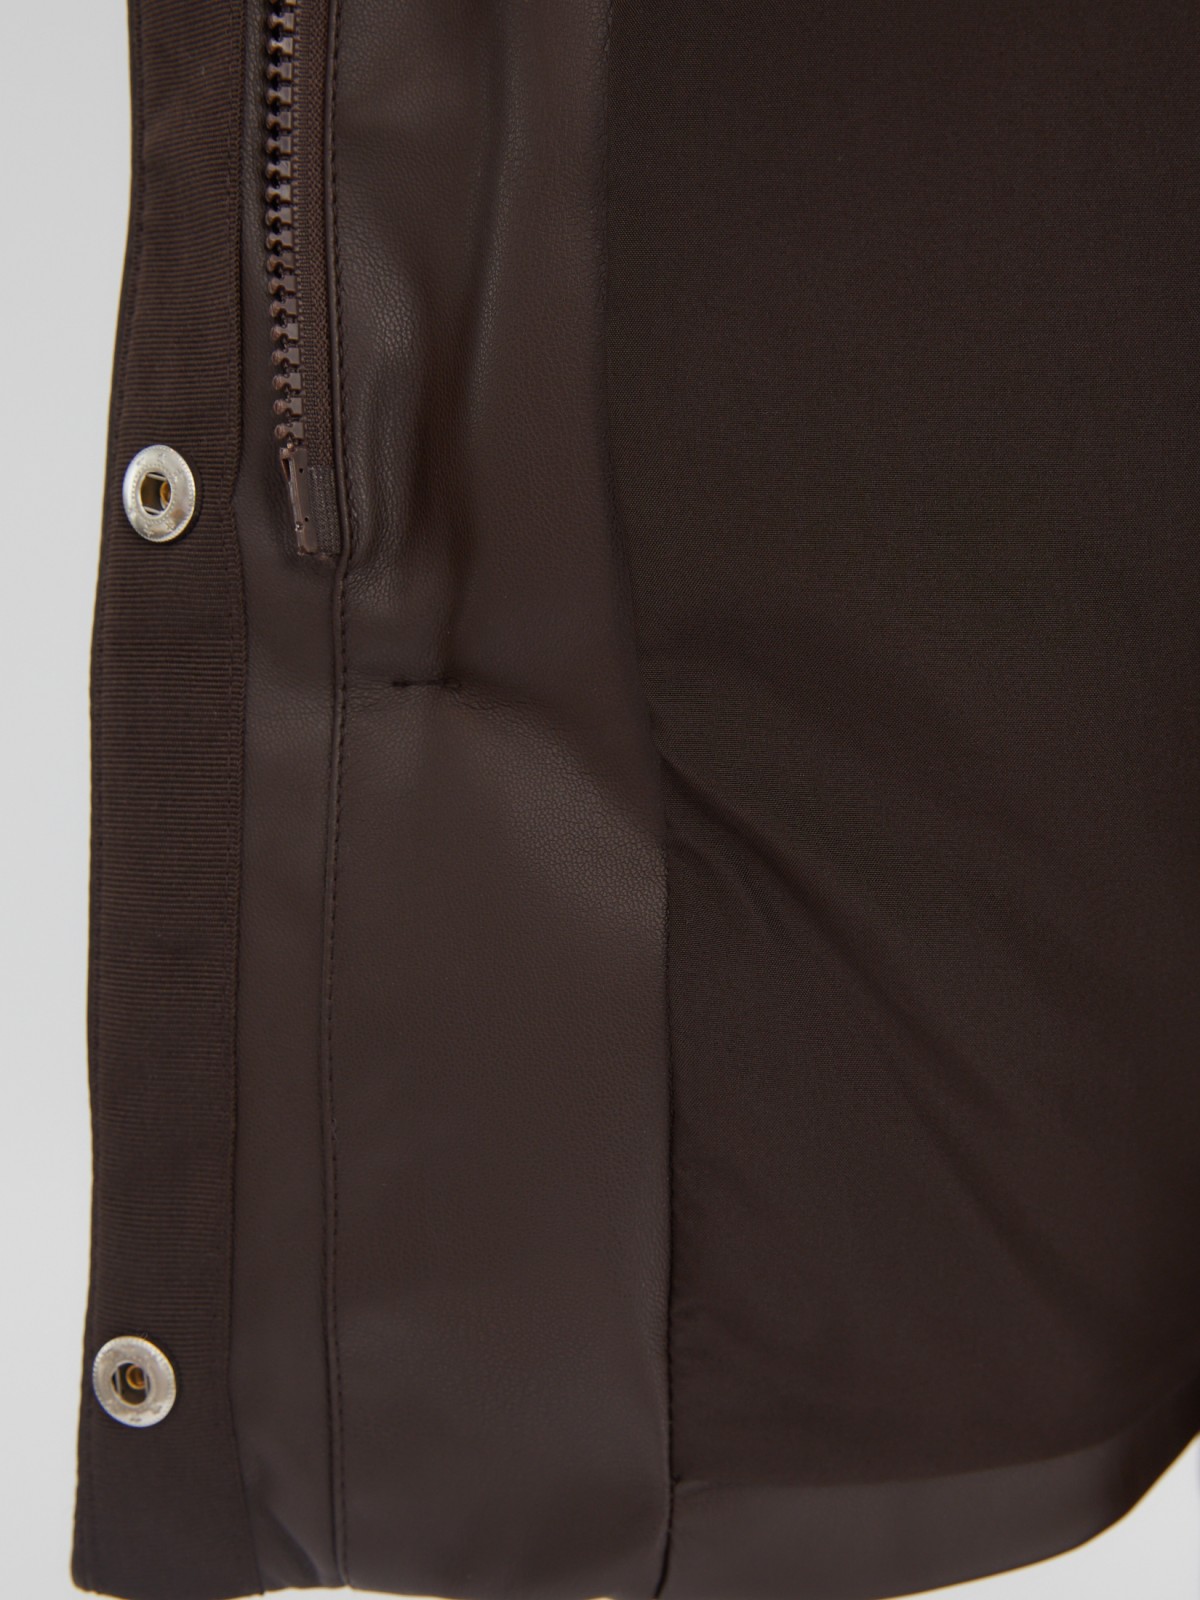 Тёплая стёганая куртка-пальто из экокожи с высоким воротником zolla 023345202054, цвет коричневый, размер XS - фото 5